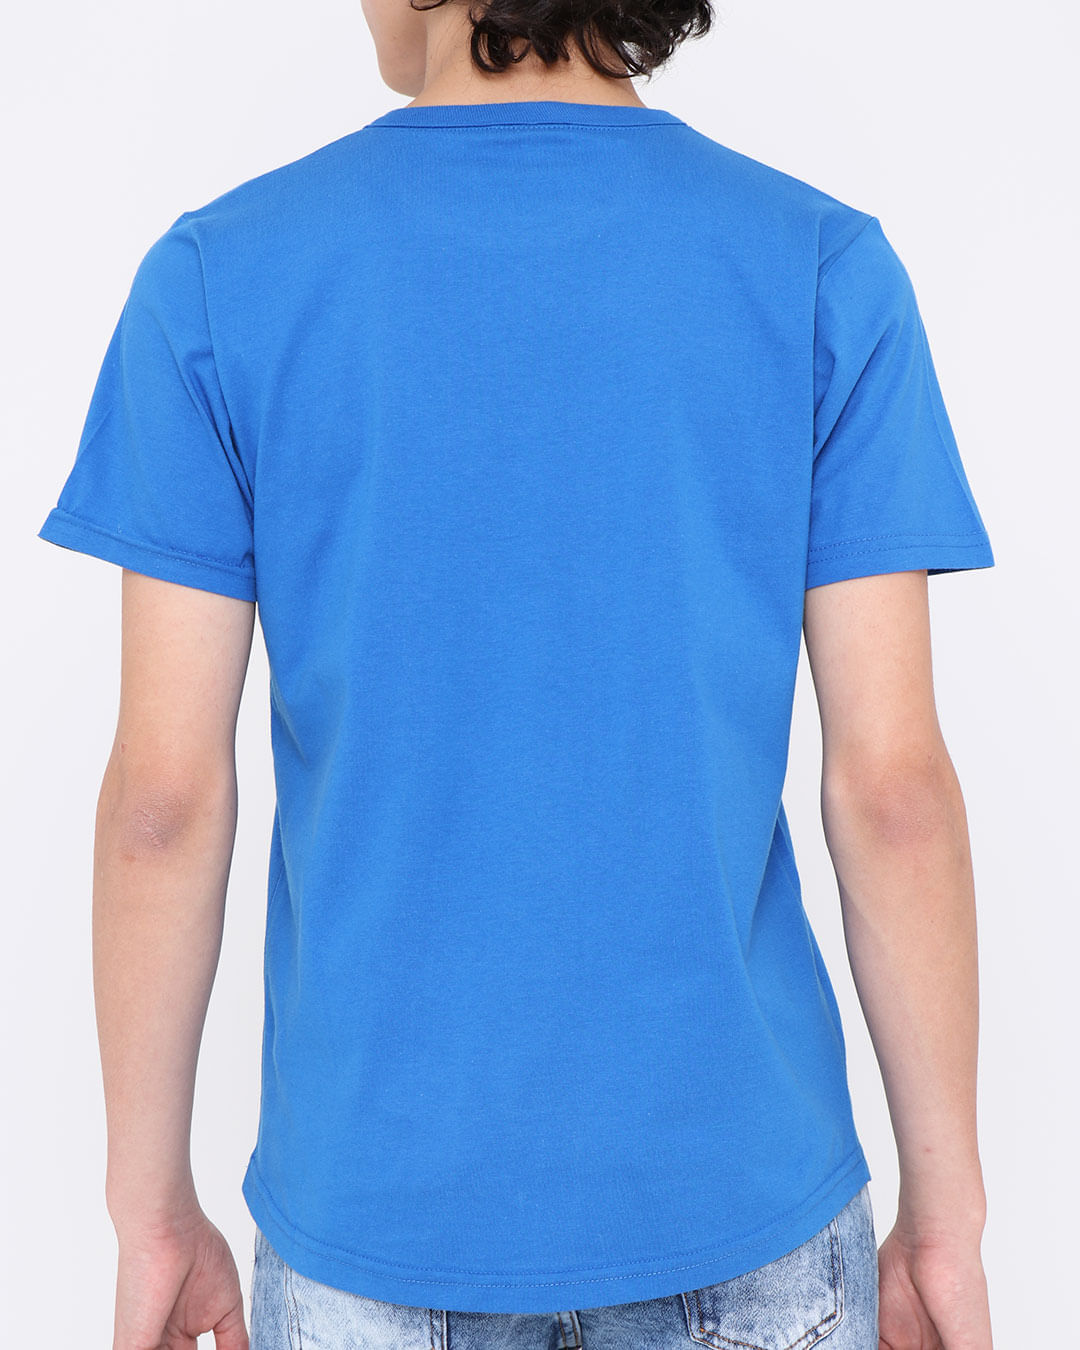 Camiseta-Juvenil-Manga-Curta-Estampa-Push-Camuflada-Azul